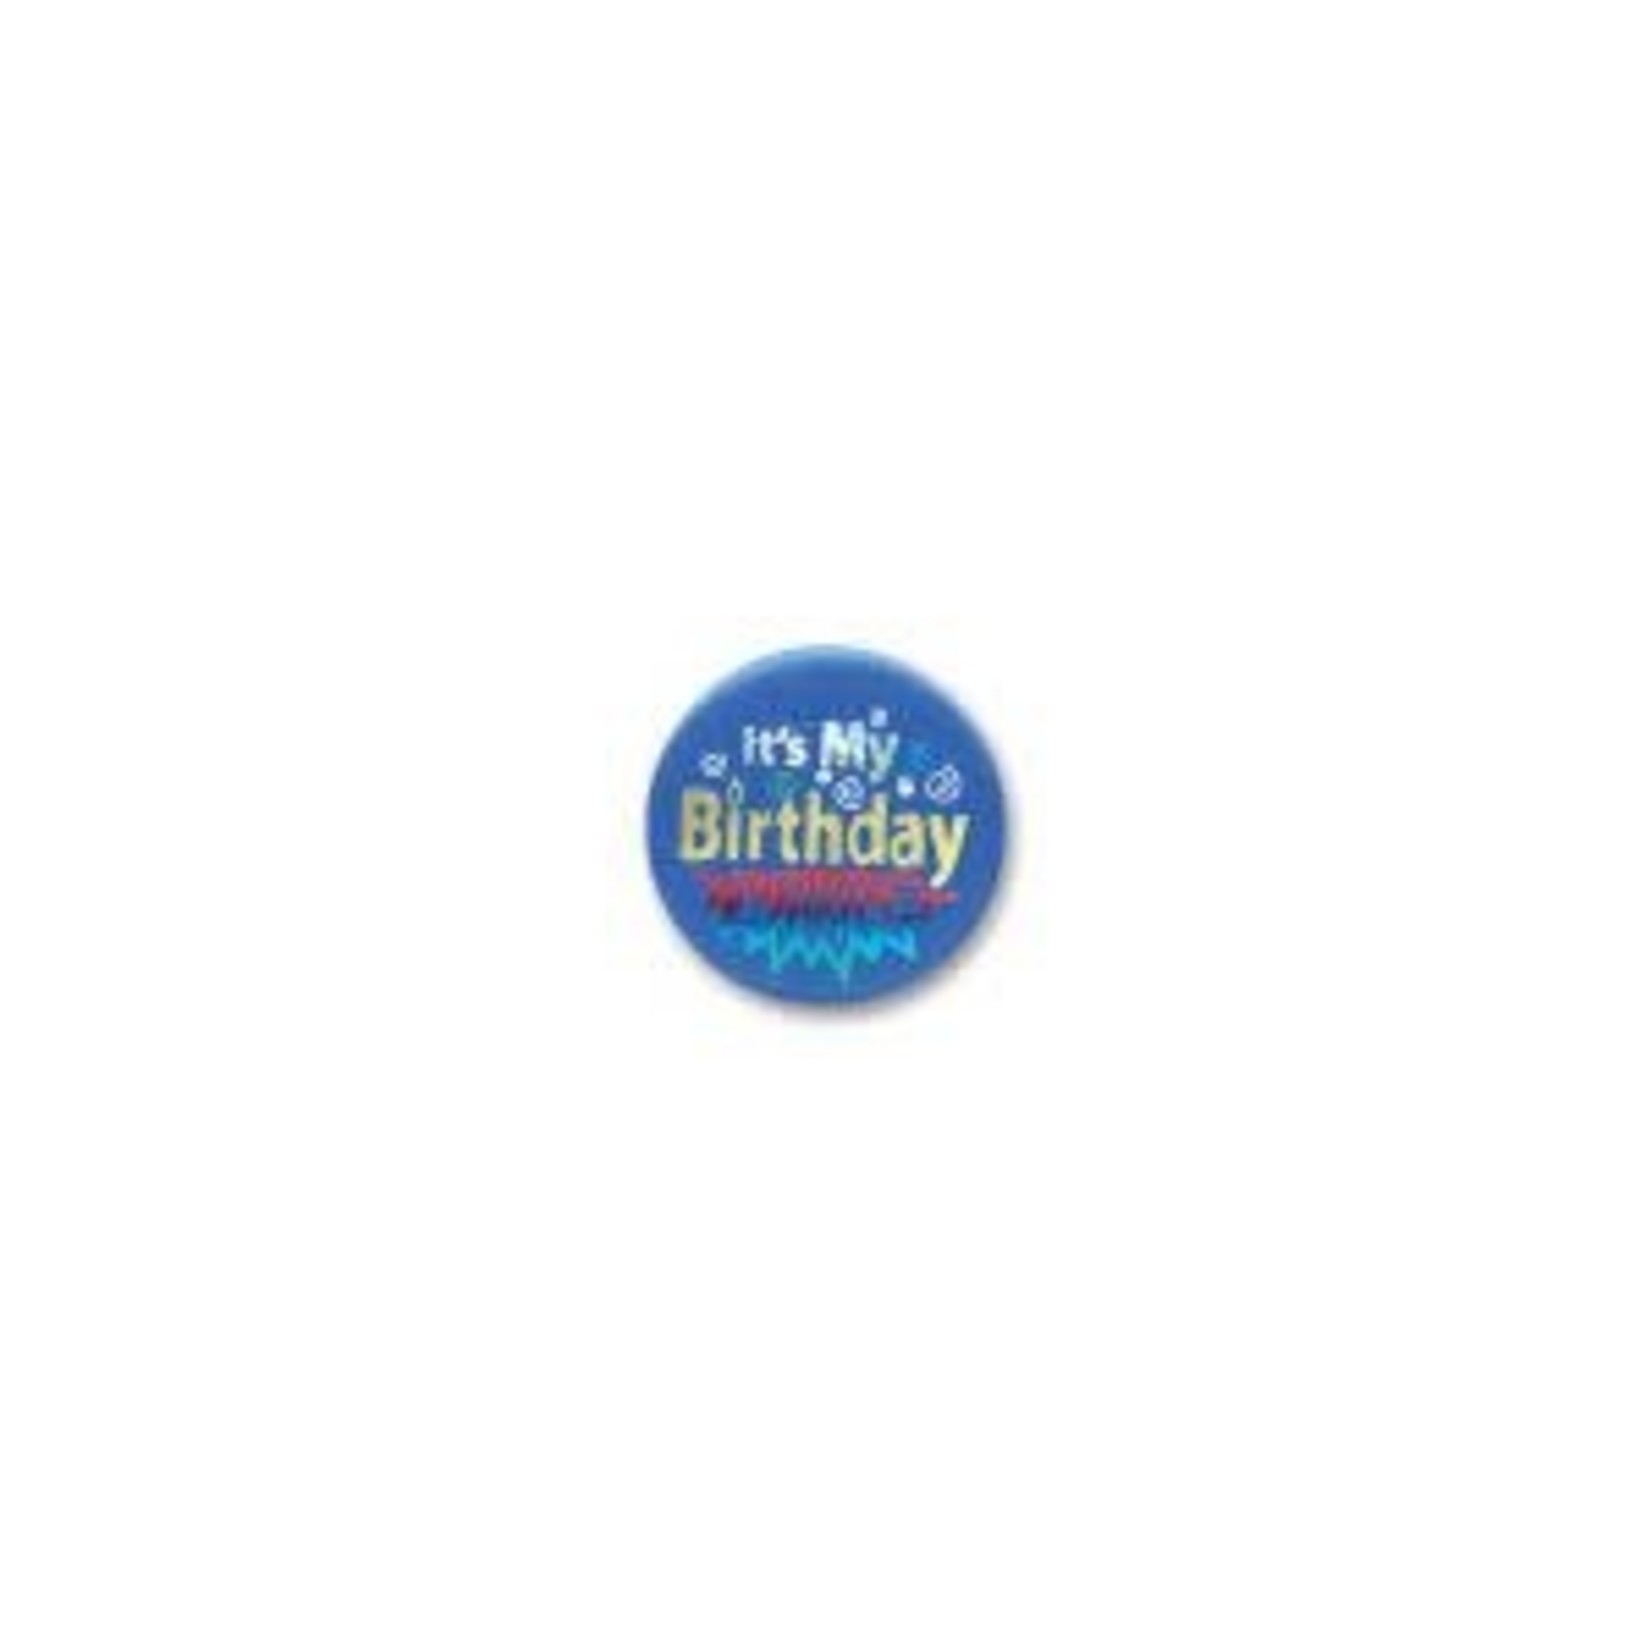 Beistle 'It's My Birthday' Blue Satin Button - 1ct.